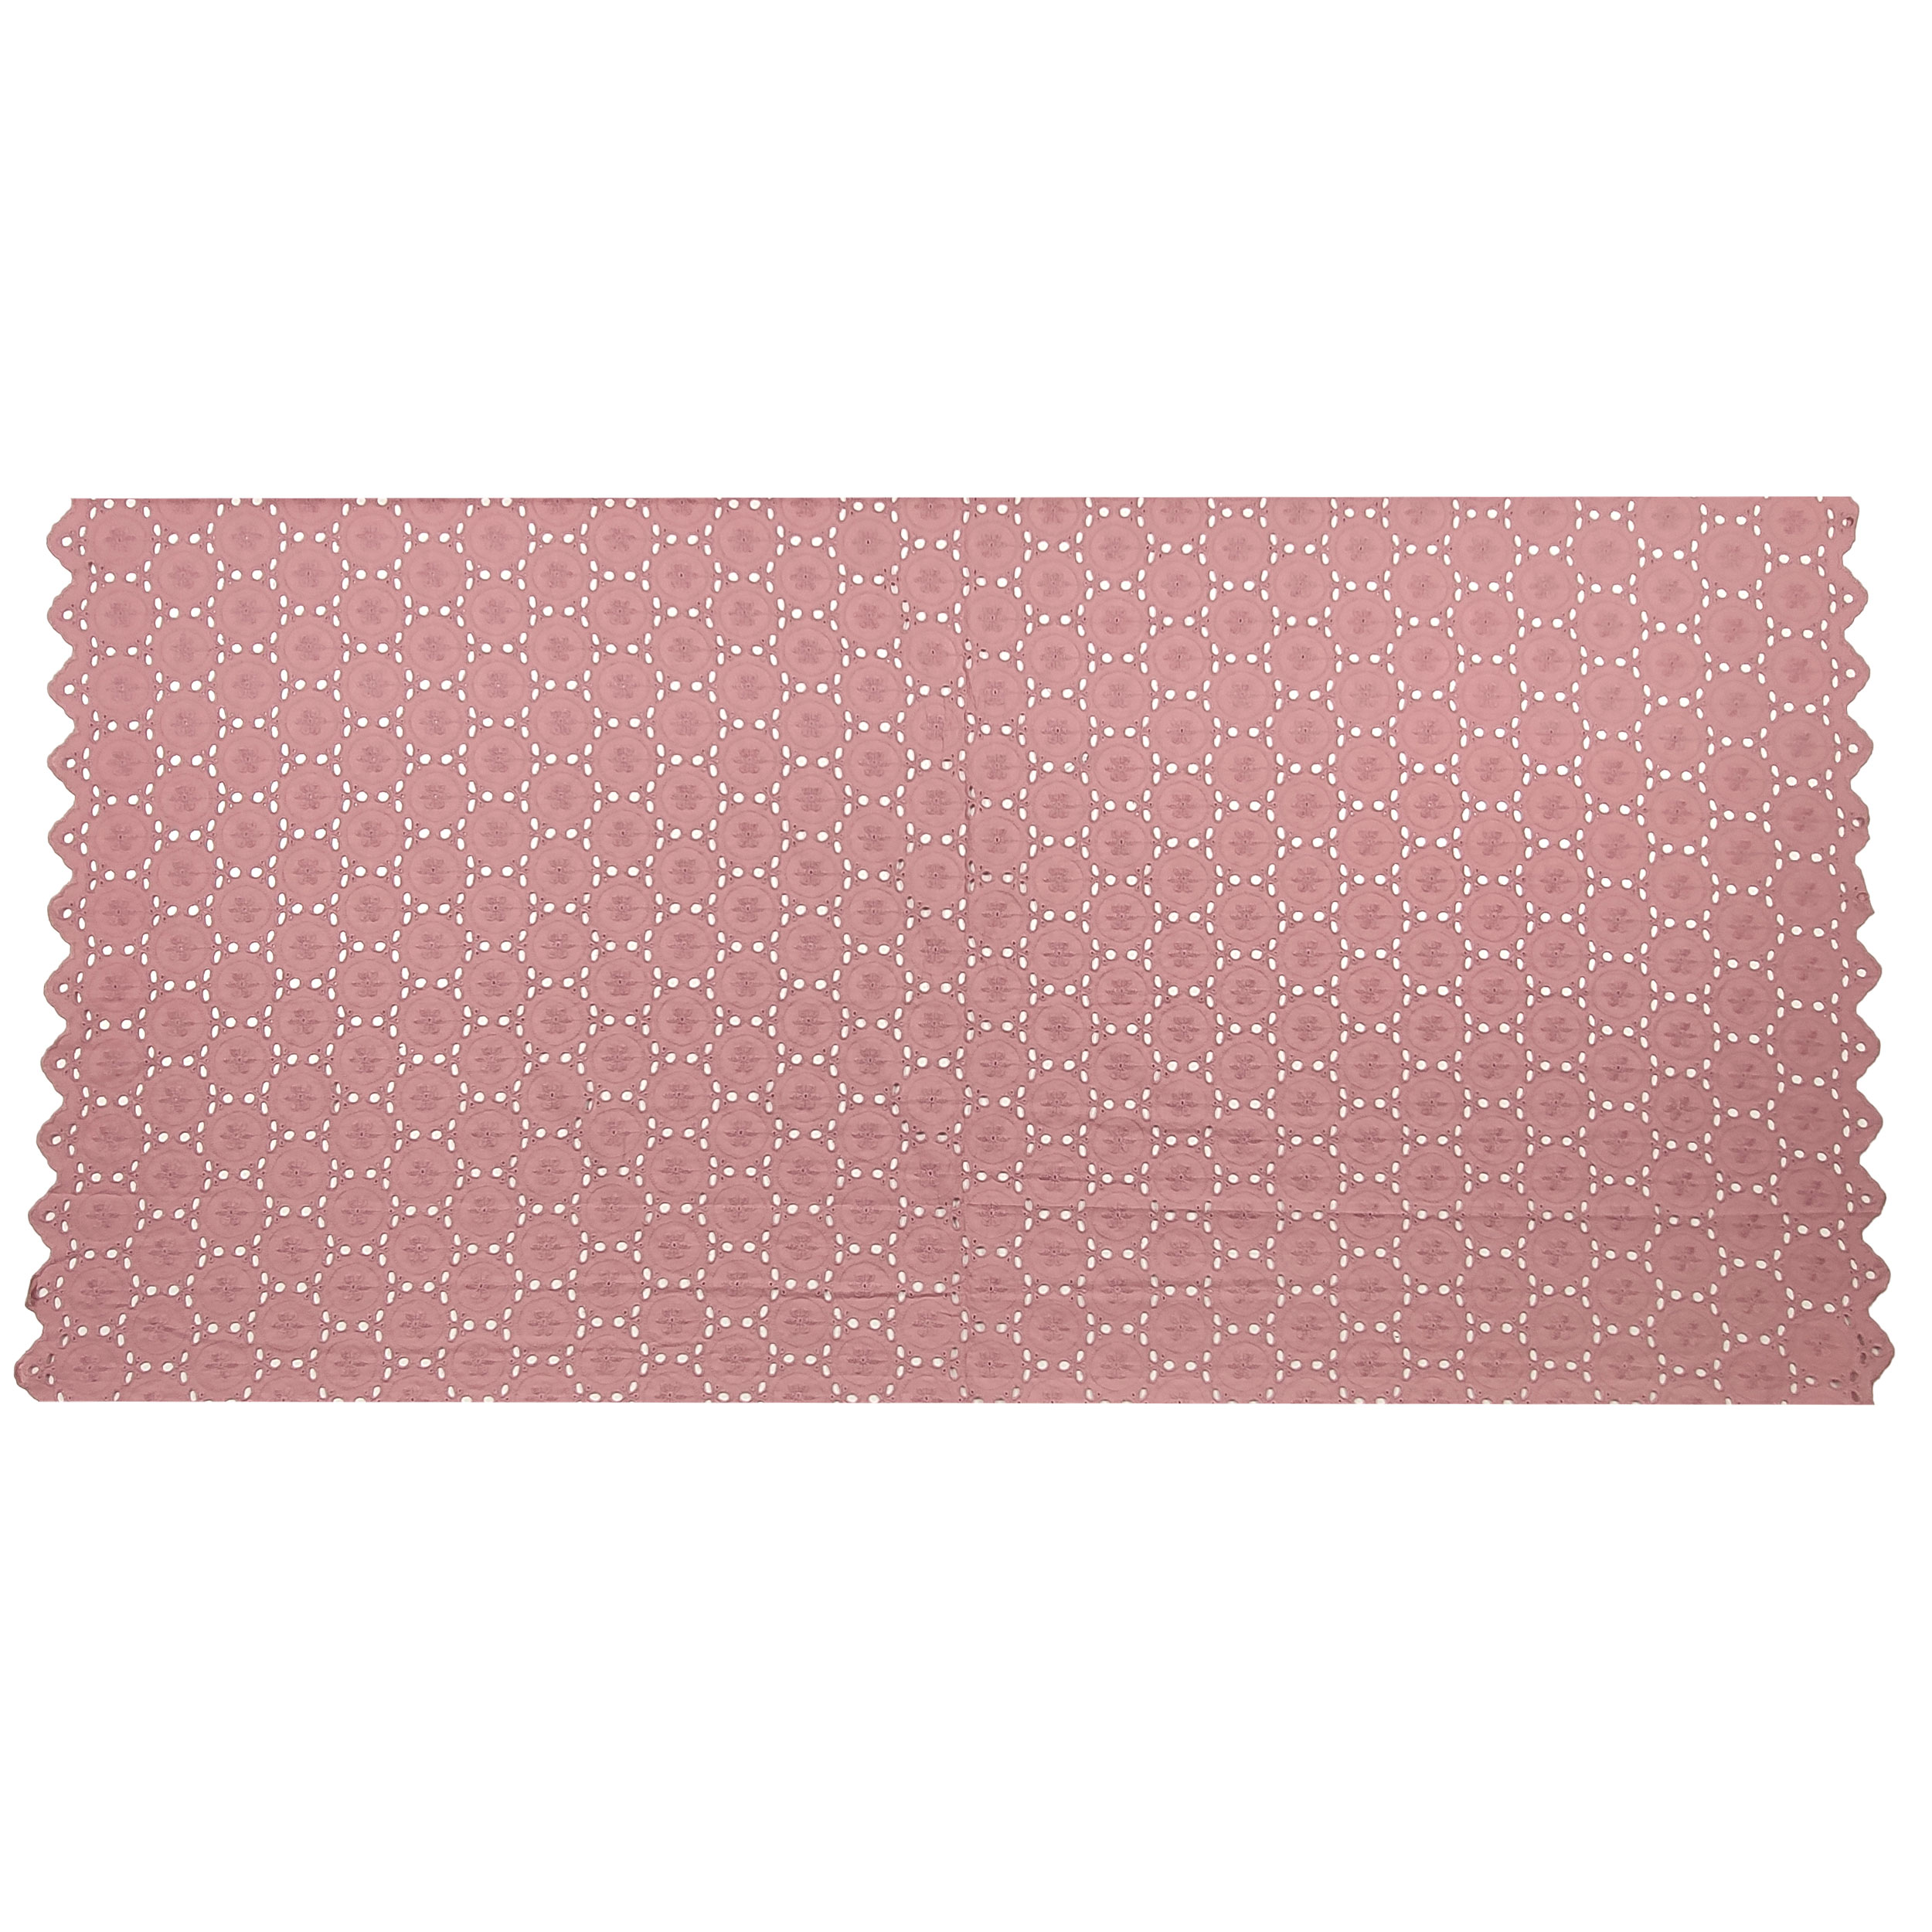 sangallo doppio bordo rosa antico puro cotone